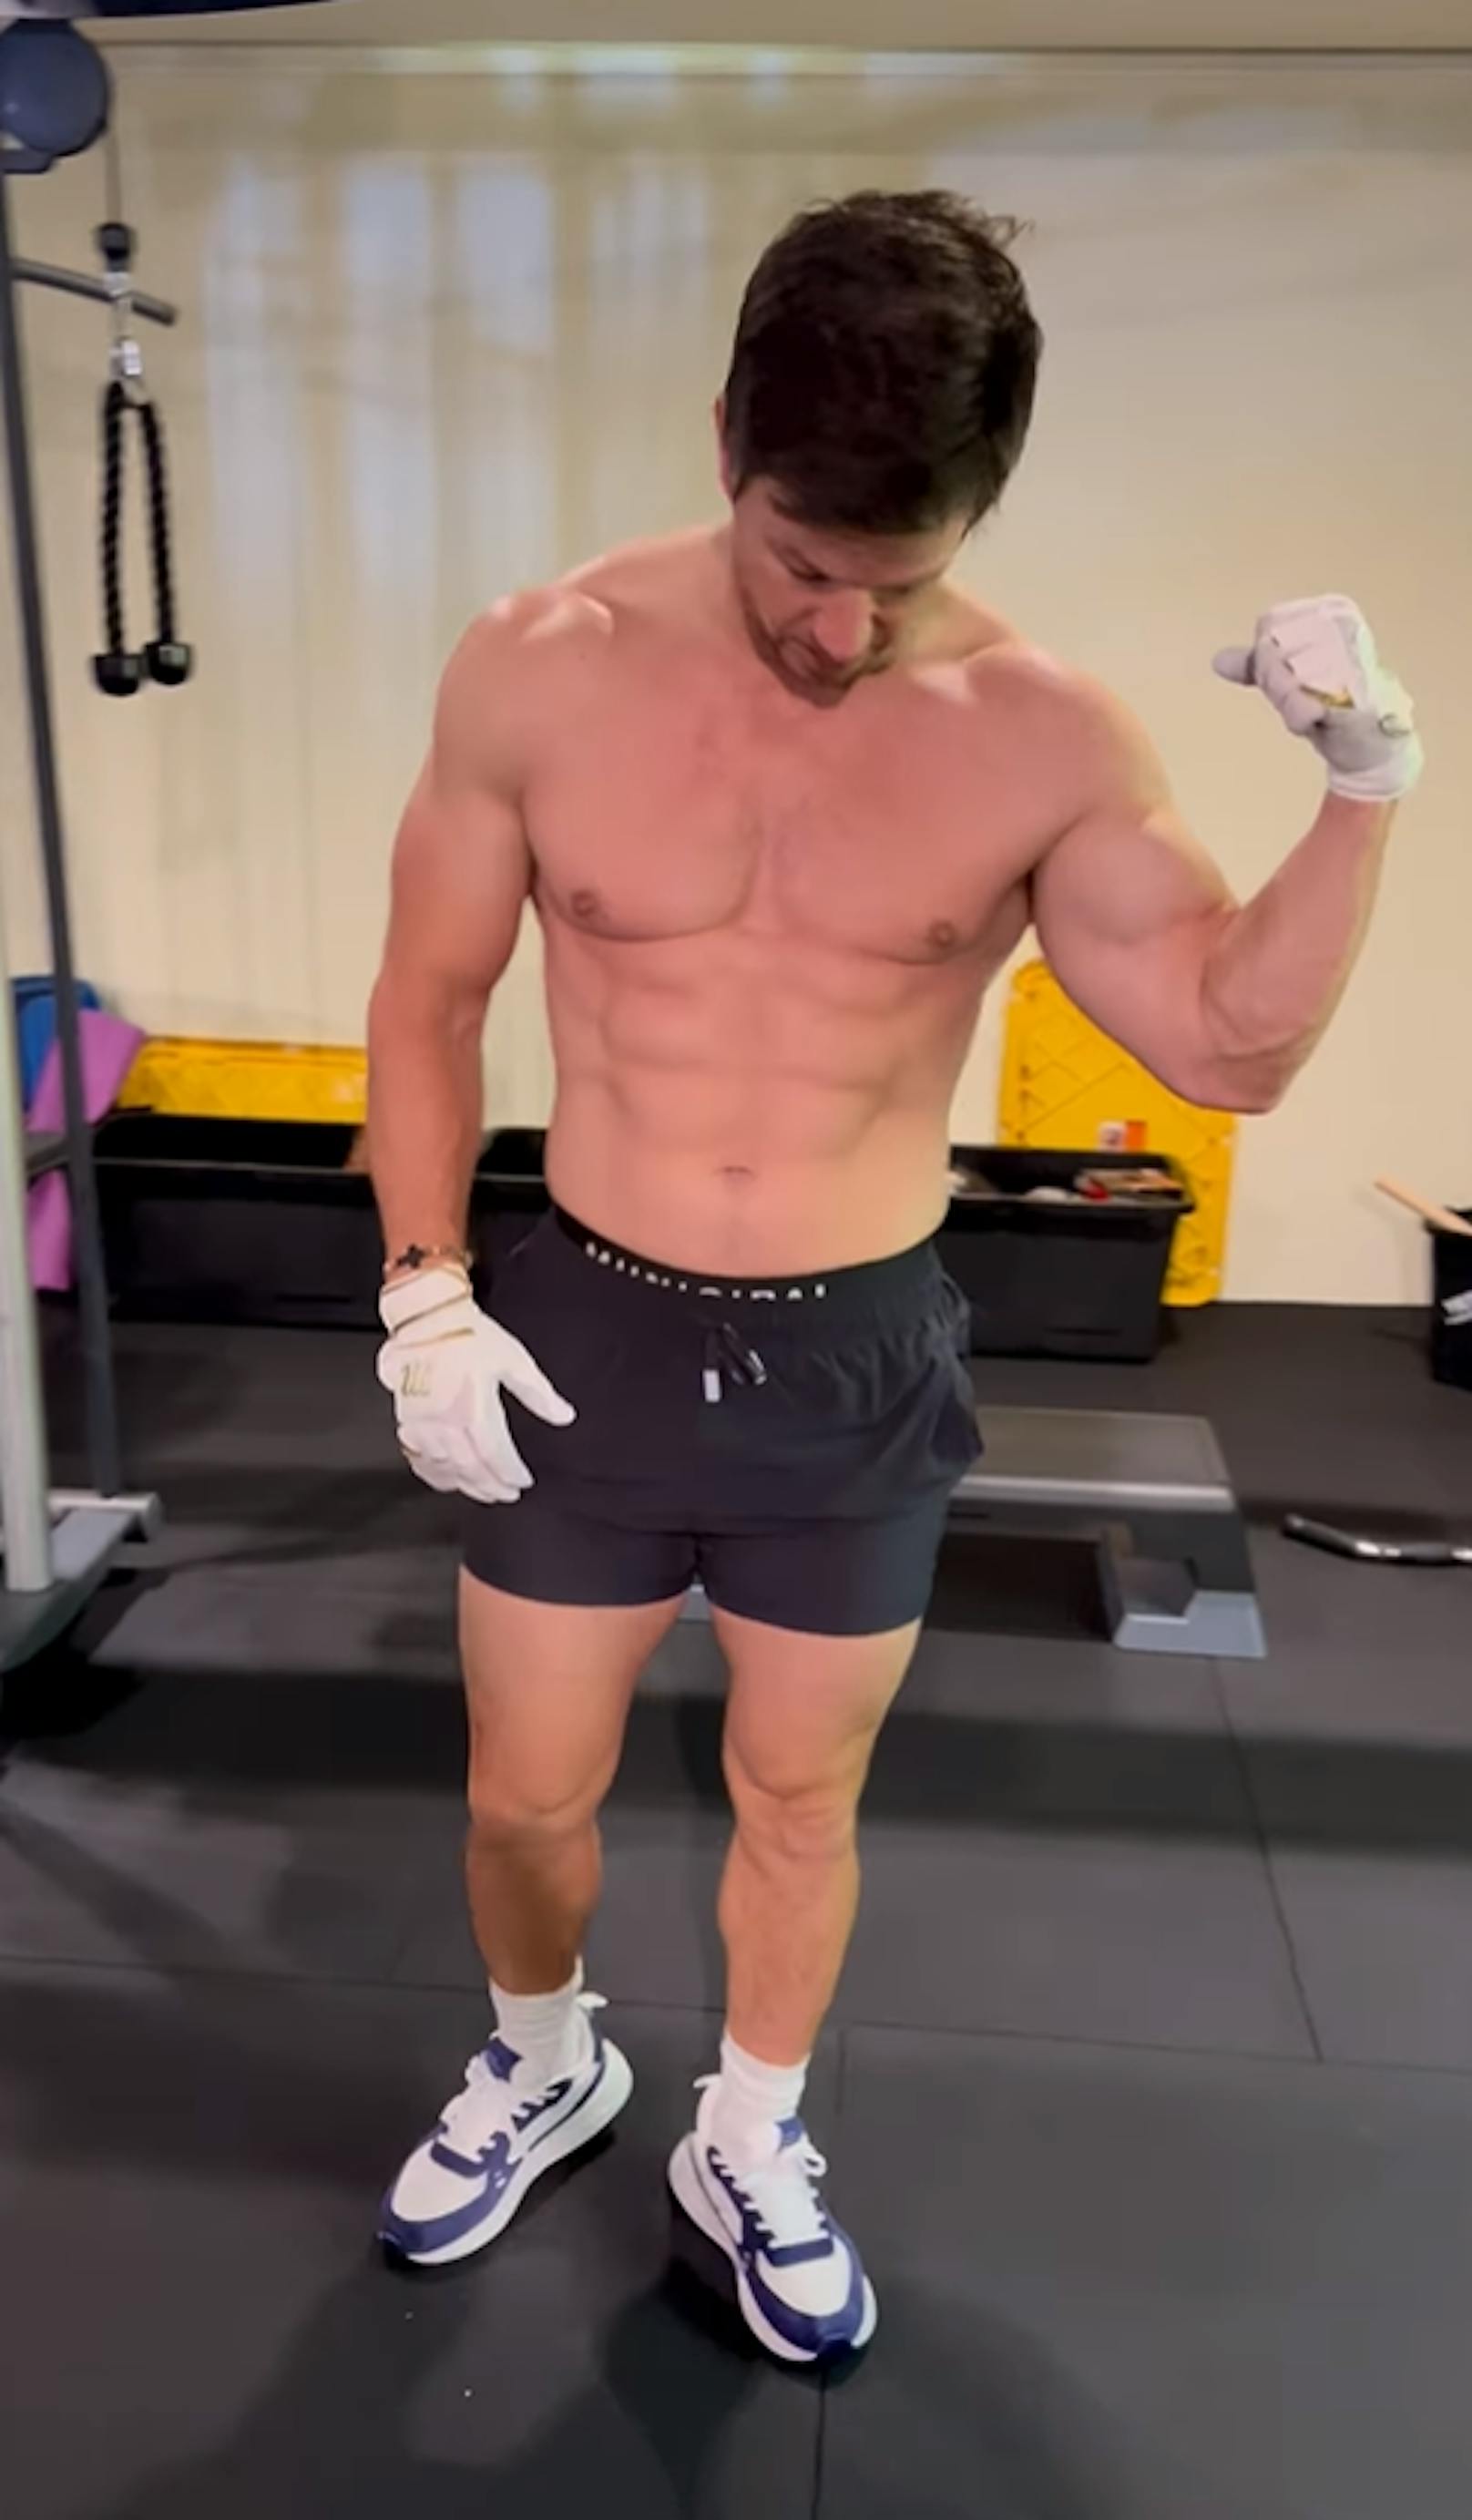 Mark Wahlberg ist auf Social Media fast nur mehr im Gym - bei diesem Körper, kein Wunder.